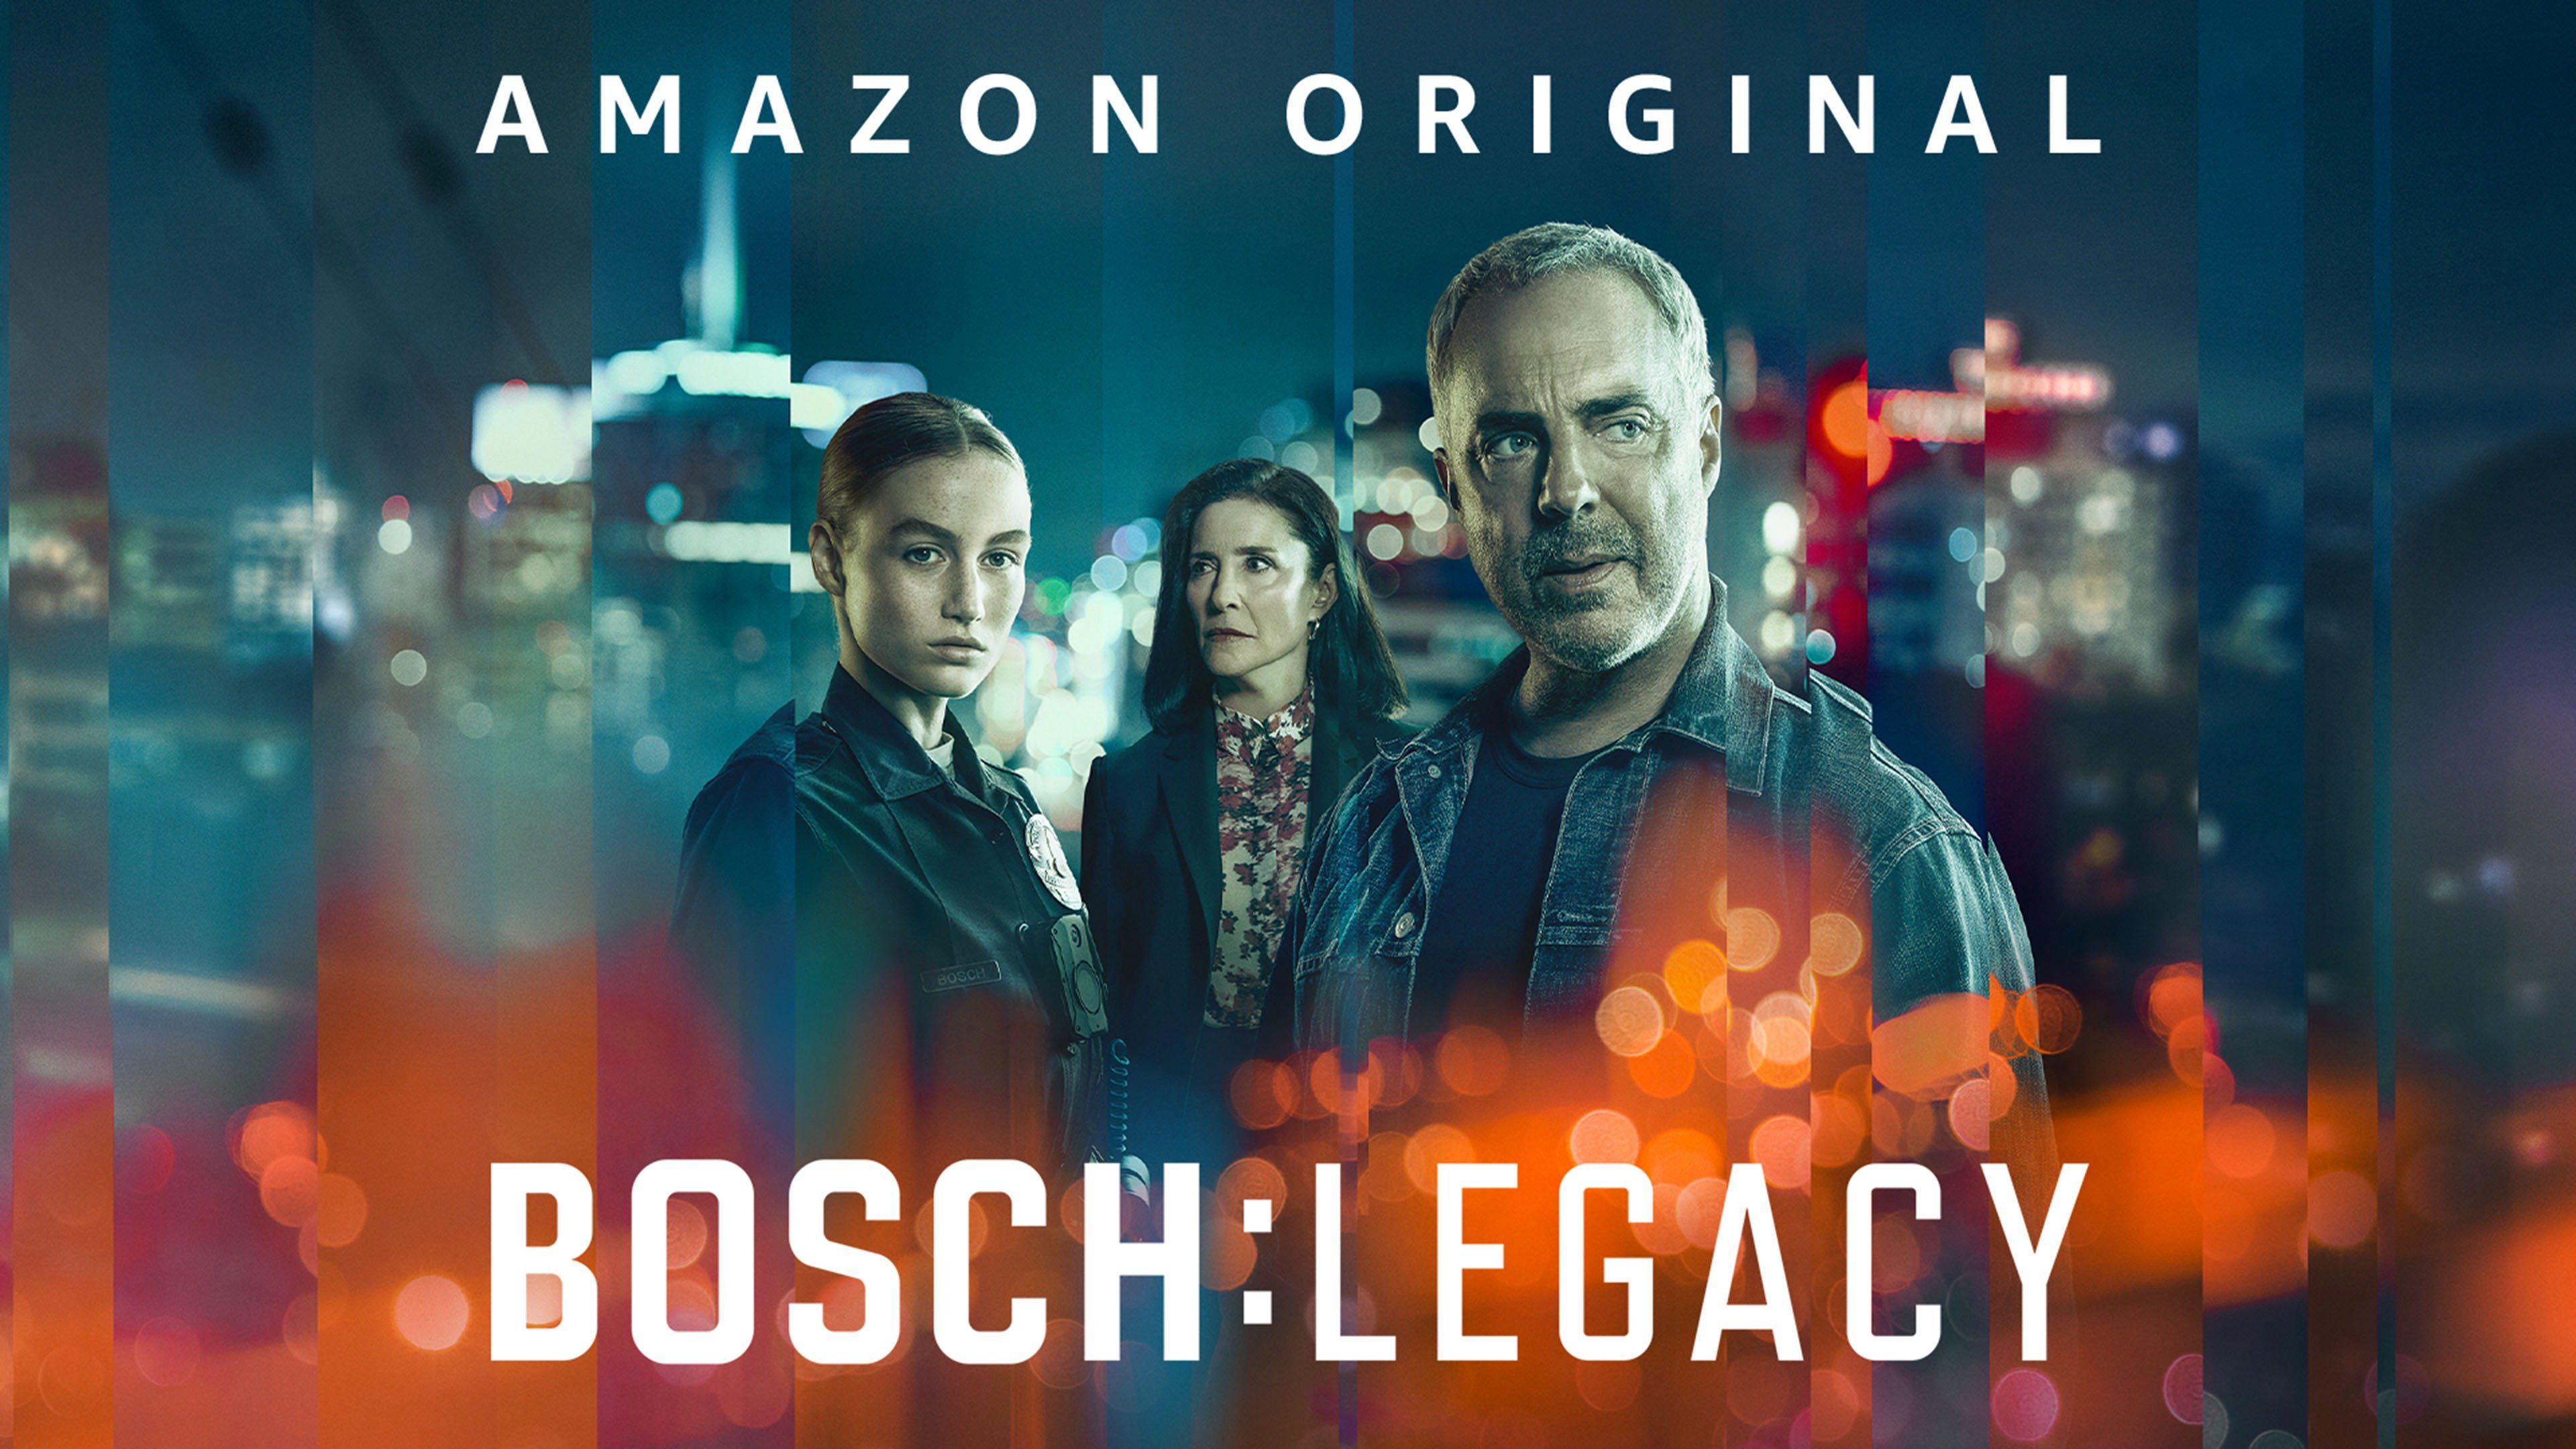 Bosch: Legacy Bosch: Legacy